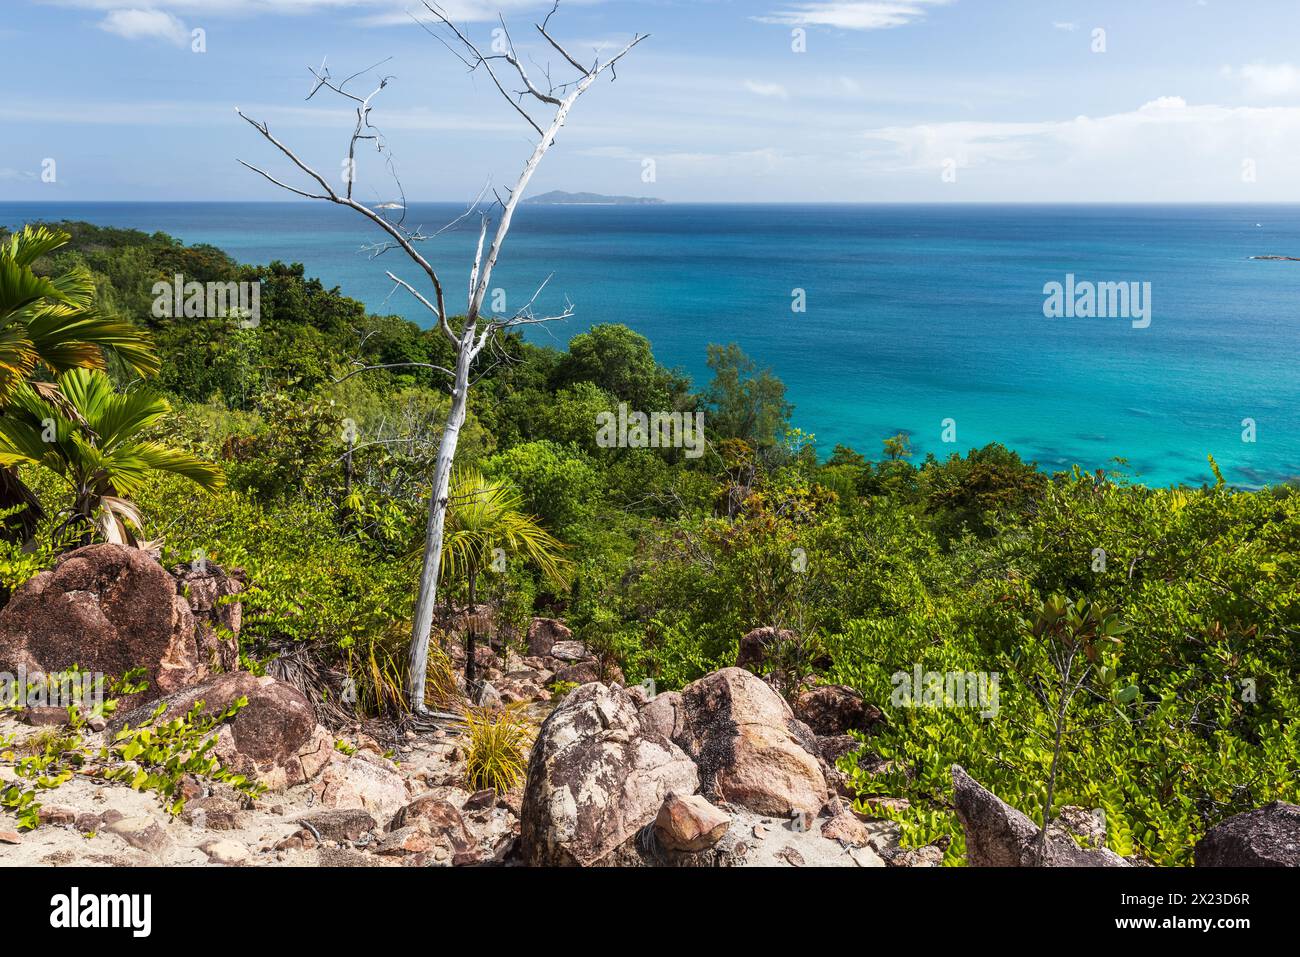 Paysage de la plage d'Anse Lazio par une journée ensoleillée. Île de Praslin, Seychelles Banque D'Images